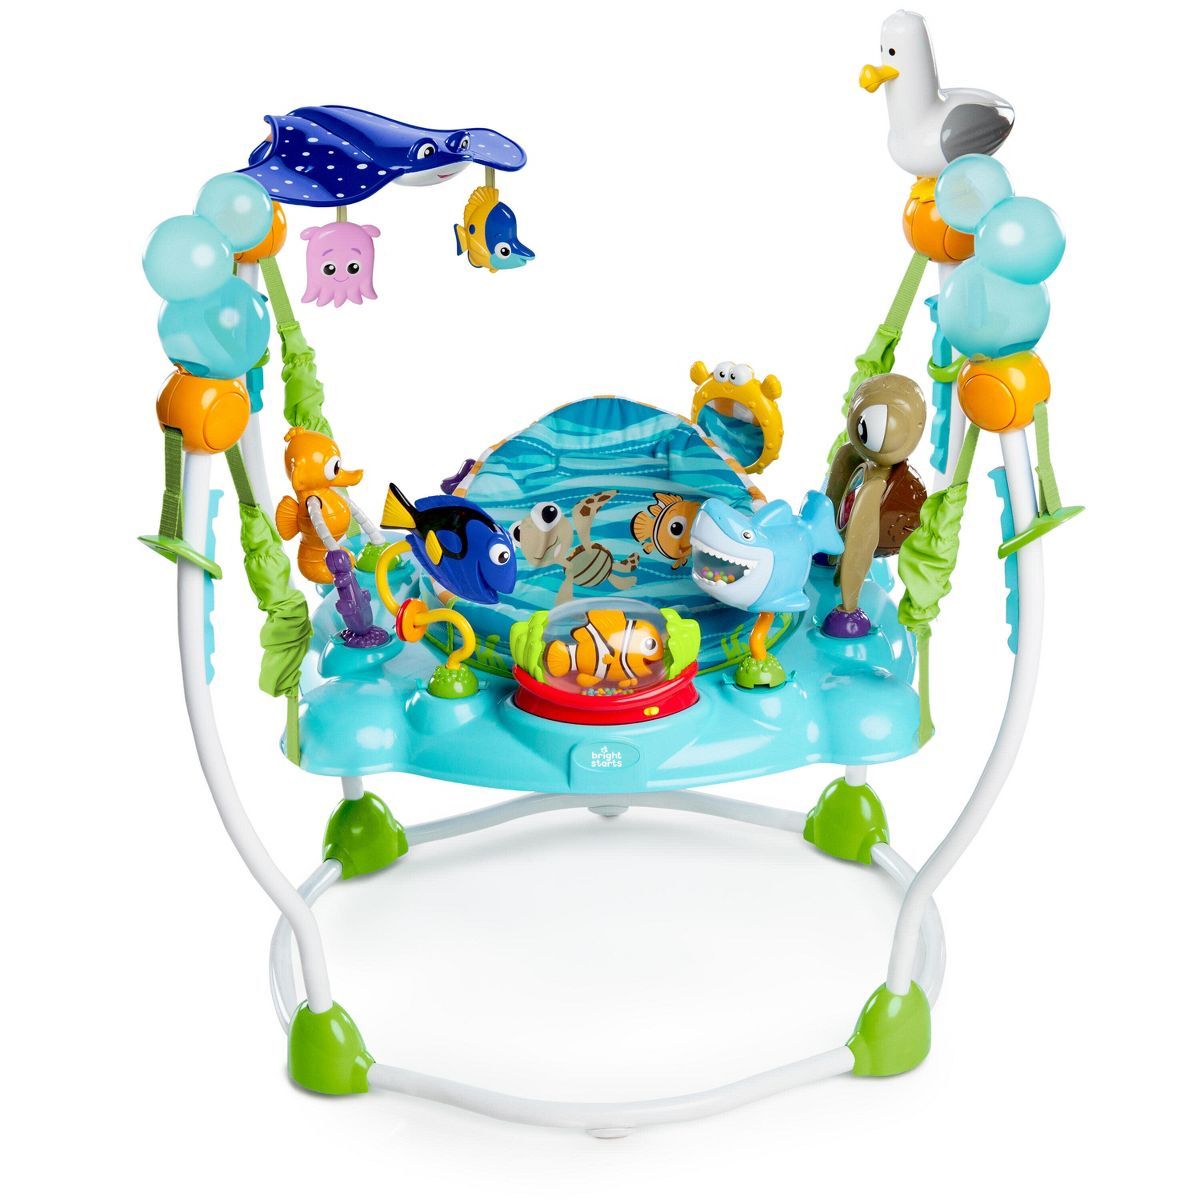 Disney Baby Finding Nemo Sea of Activities Jumper | Target